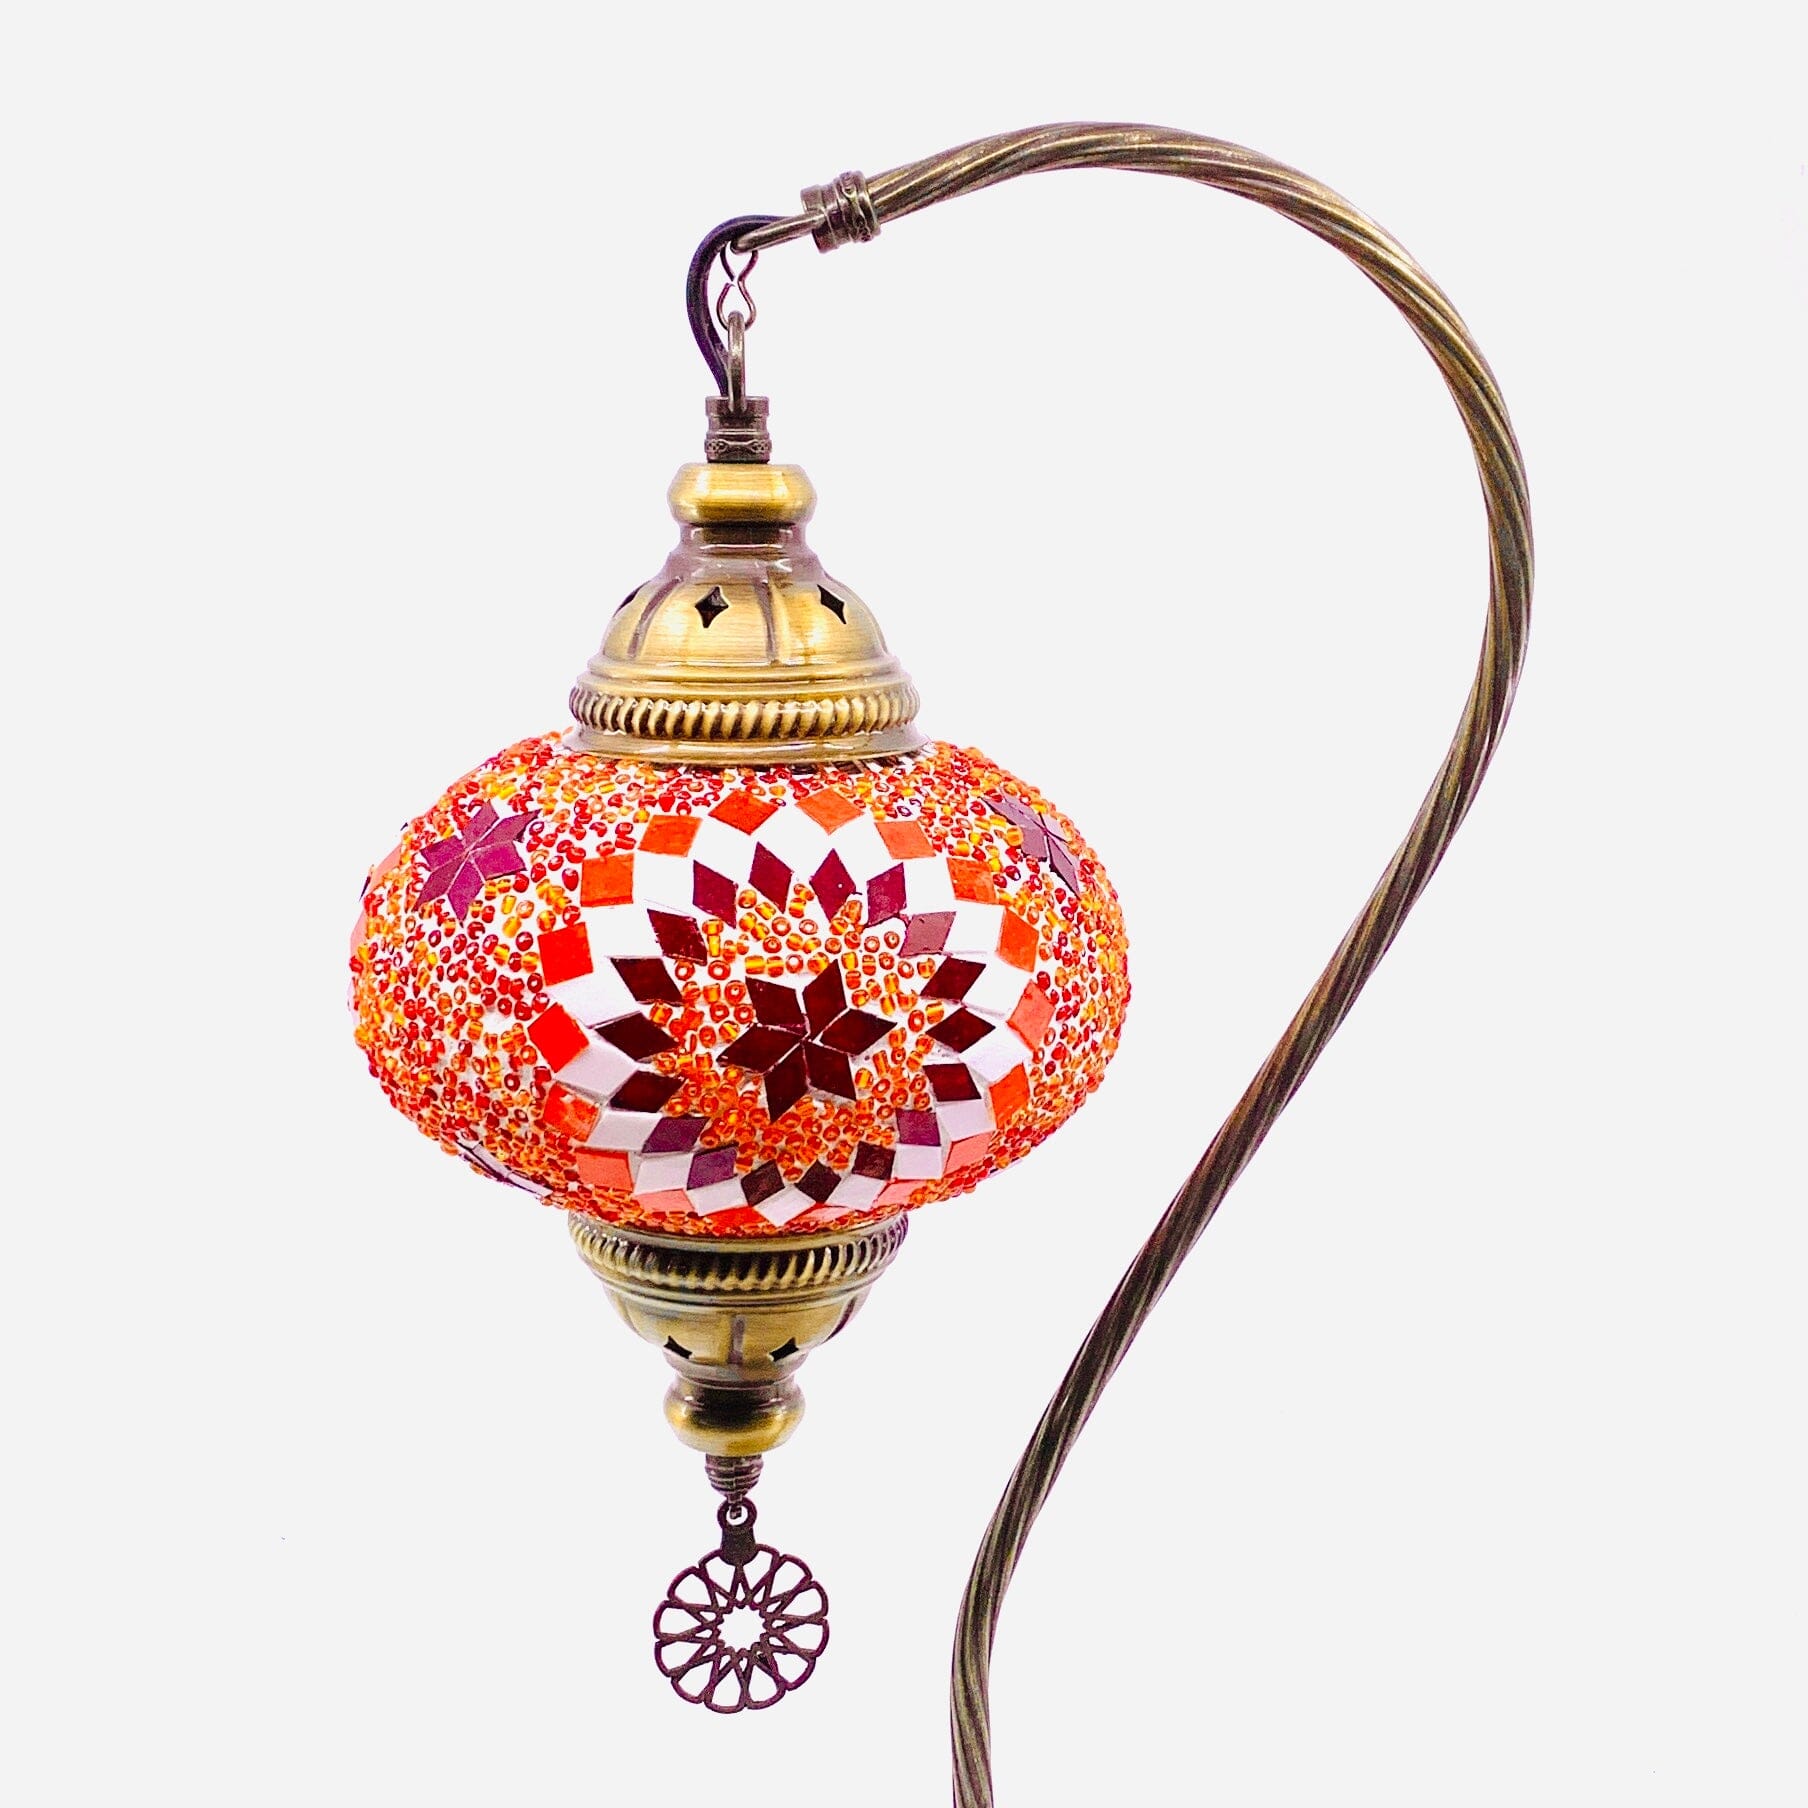 Half Heart Turkish Mosaic Lamp, 6 Decor Natto USA 